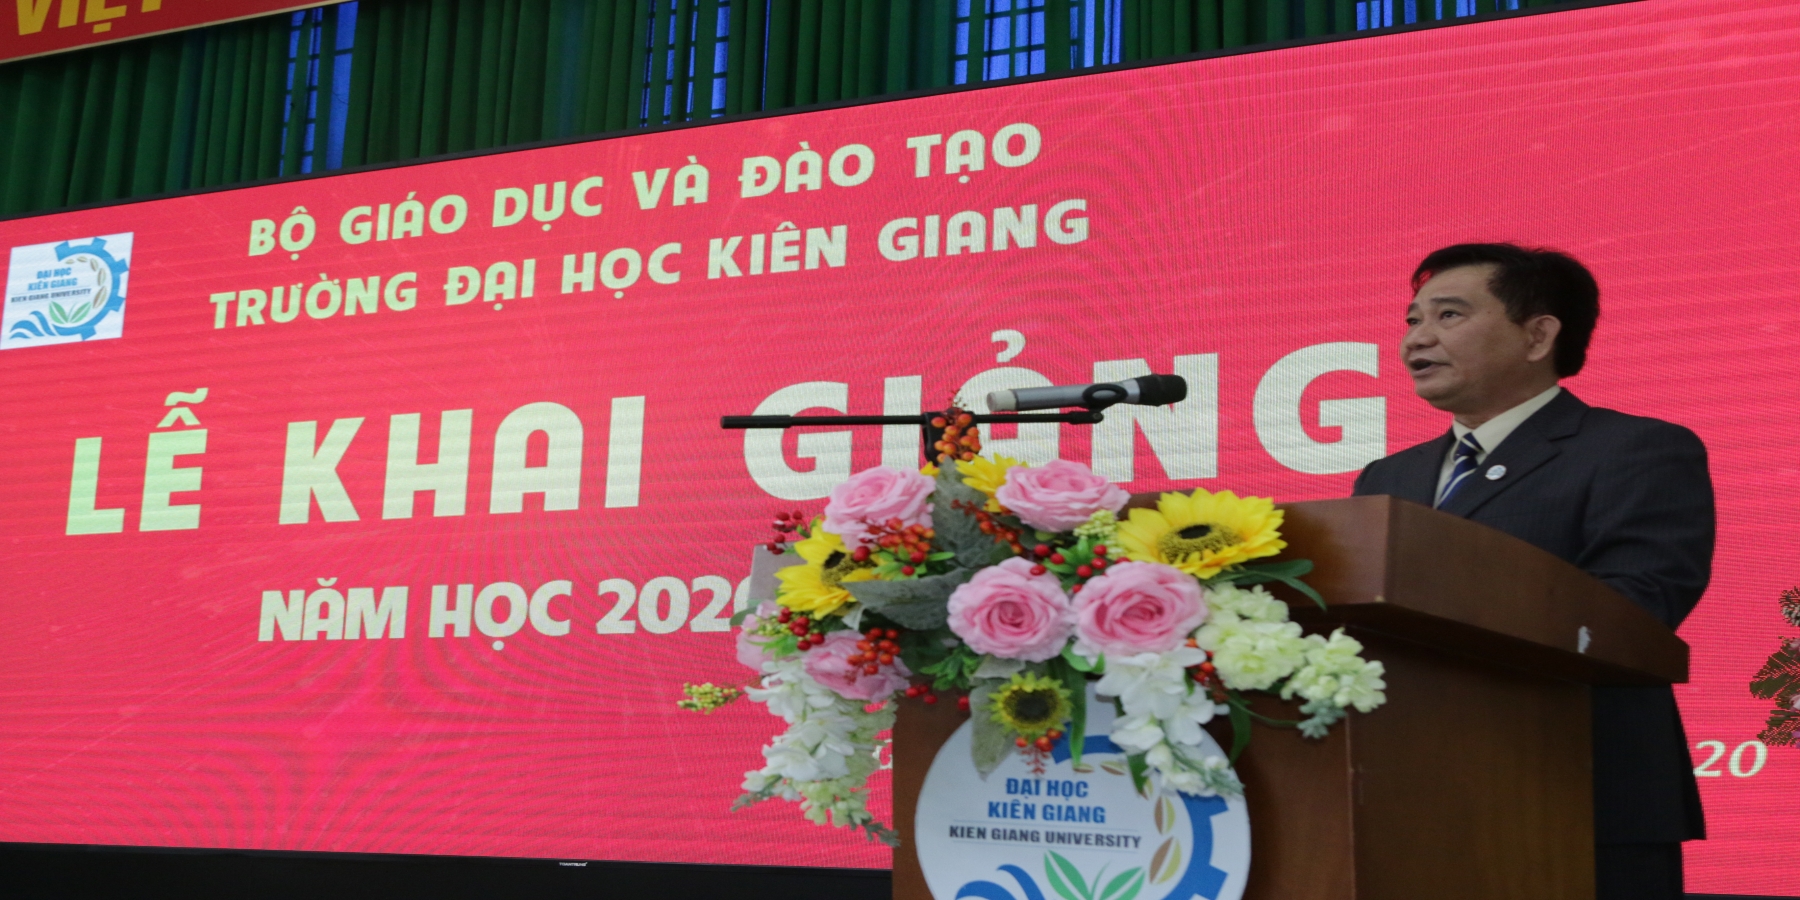 Trường Đại học Kiên Giang tổ chức Lễ khai giảng năm học mới 2020 - 2021